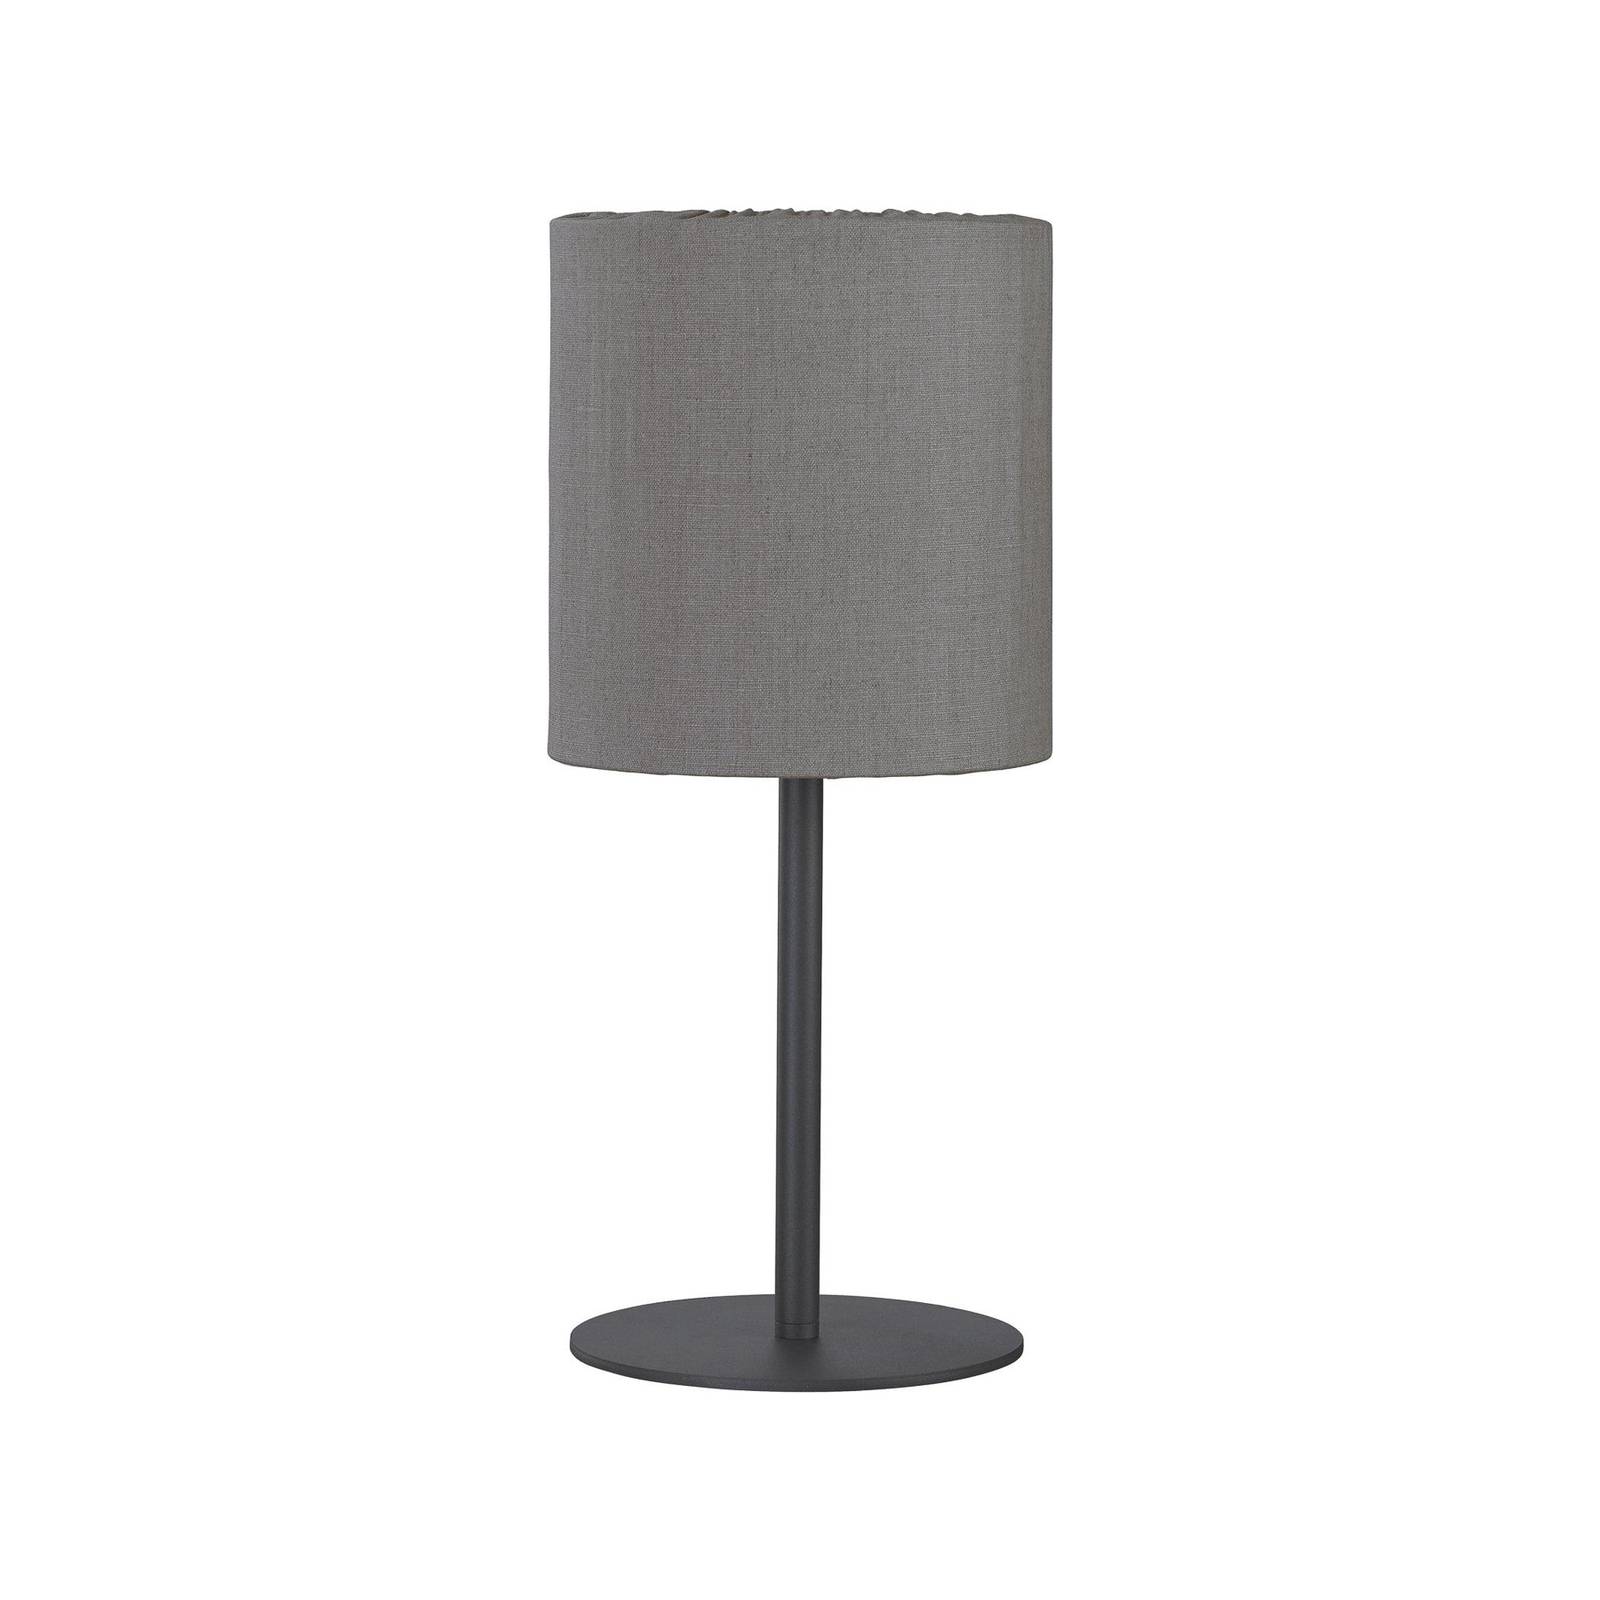 Image of PR Home lampada da tavolo per esterni Agnar, grigio scuro / marrone, 57 cm